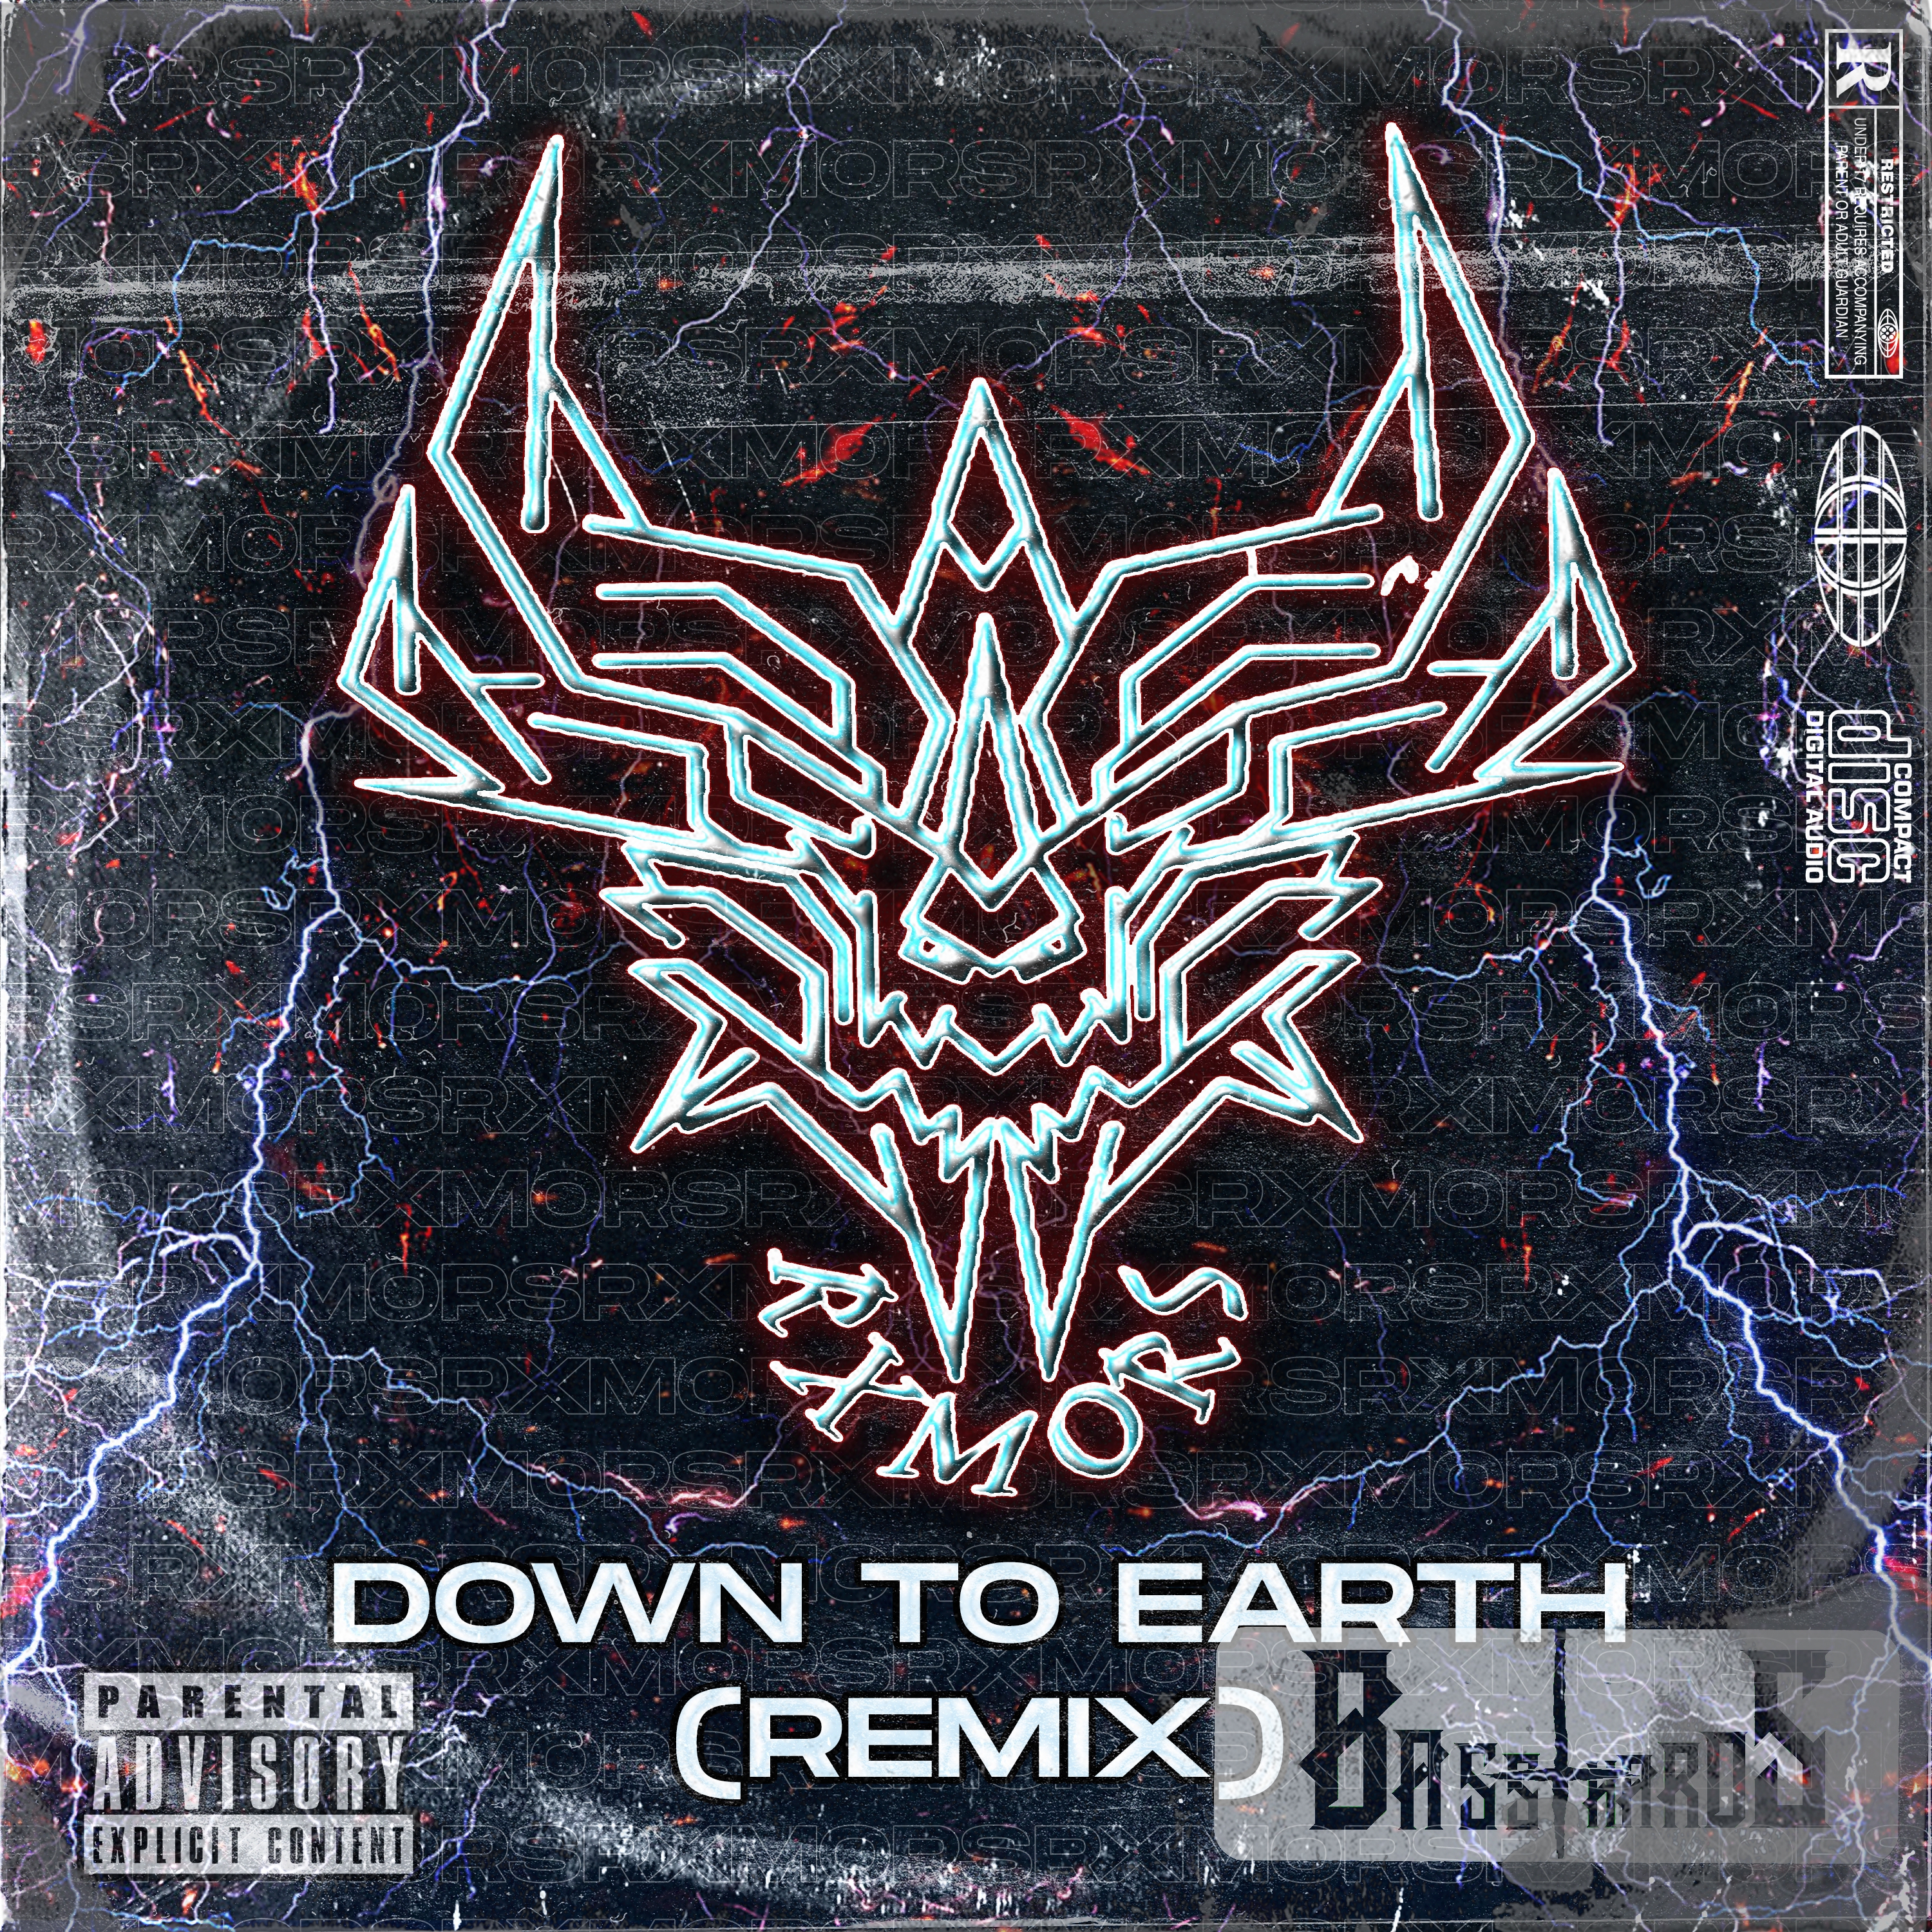 Музыка земли мп3. 2013 - Vertex - Earth Remixes.